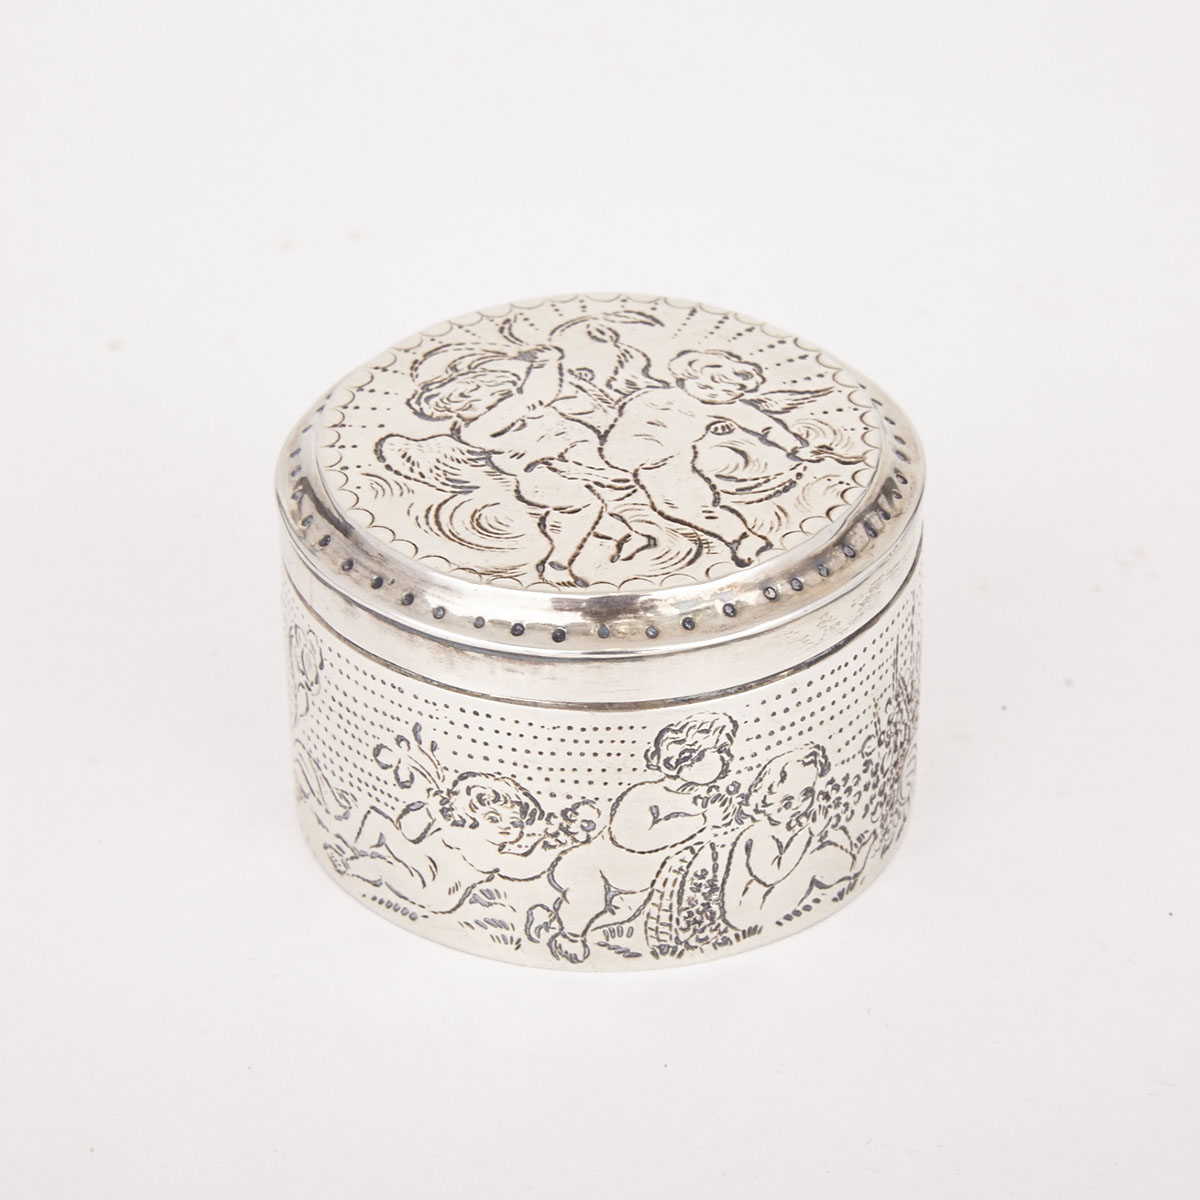 Swedish Silver Circular Box, Stockholm, 1808